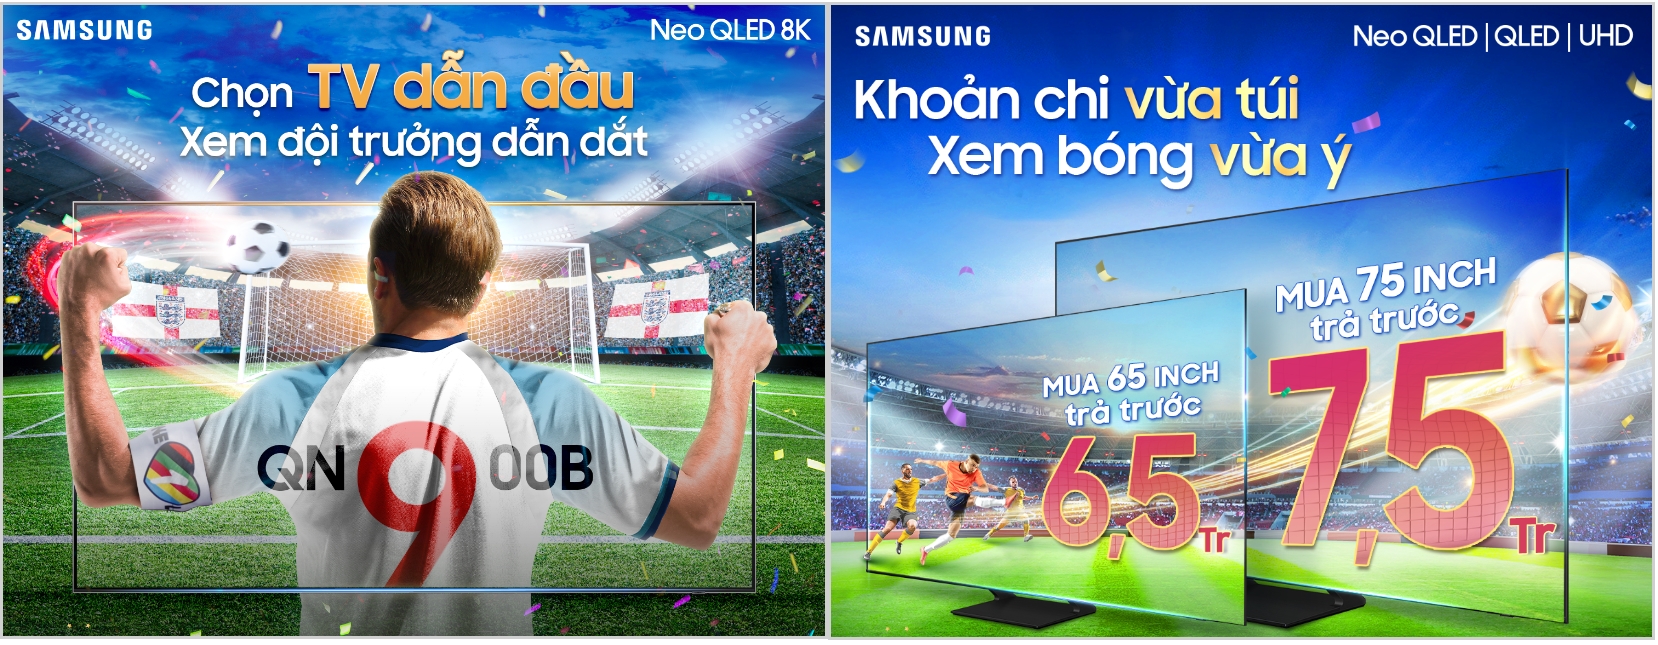 Samsung Vina phát động chương trình “7 Giờ – 5 Ngày” hưởng ứng bóng đá thế giới